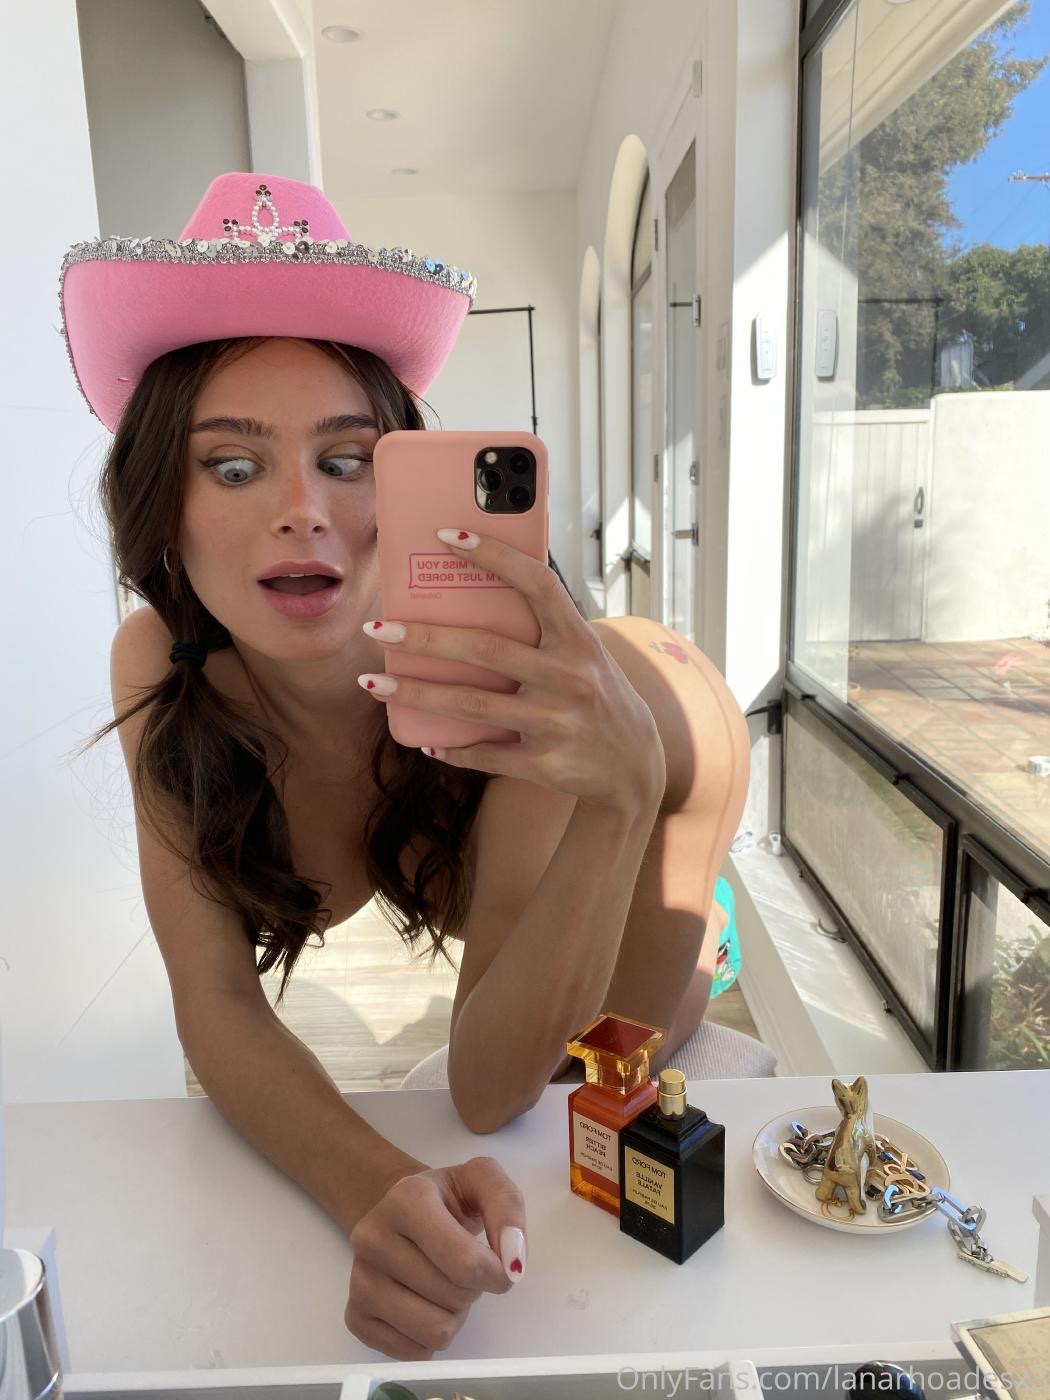 Lana Rhoades big boobs pornstar babe wearing pink cowboy hat selfie mirror